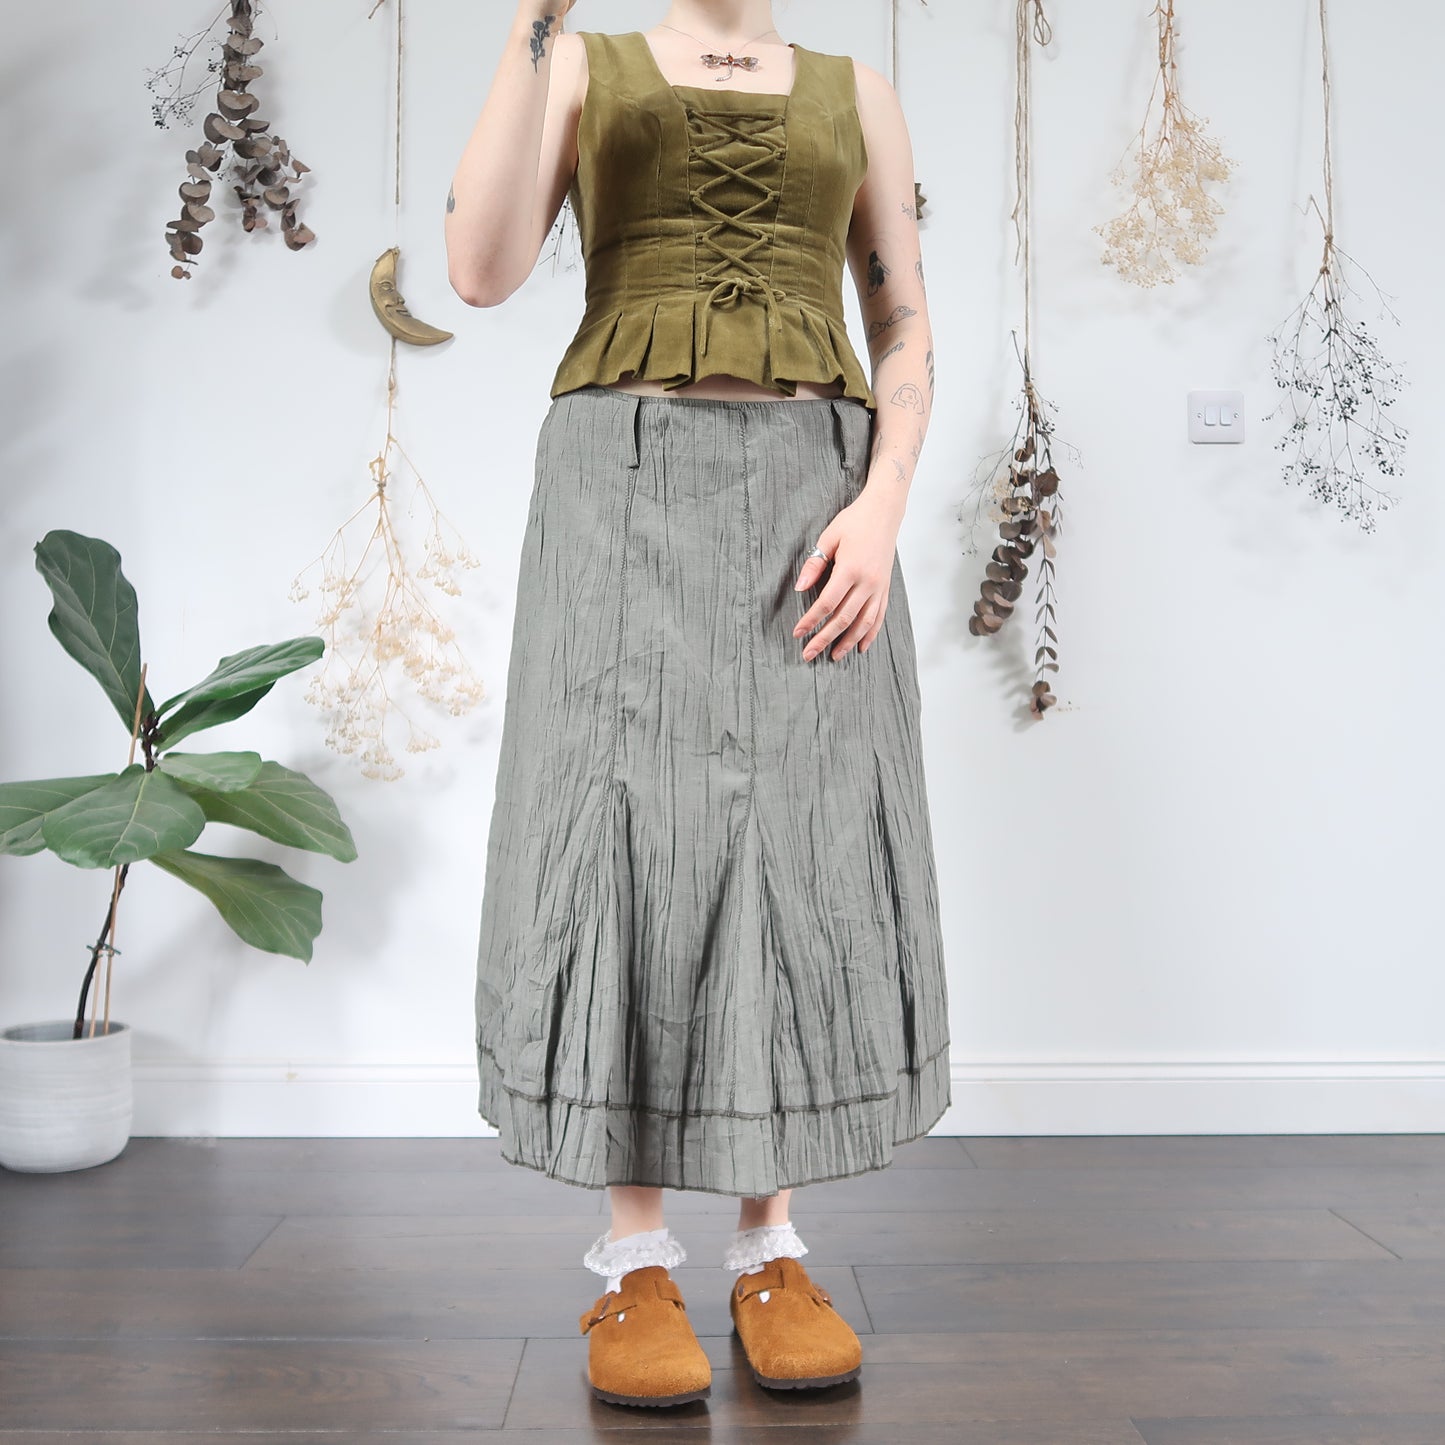 Green summer skirt - size M